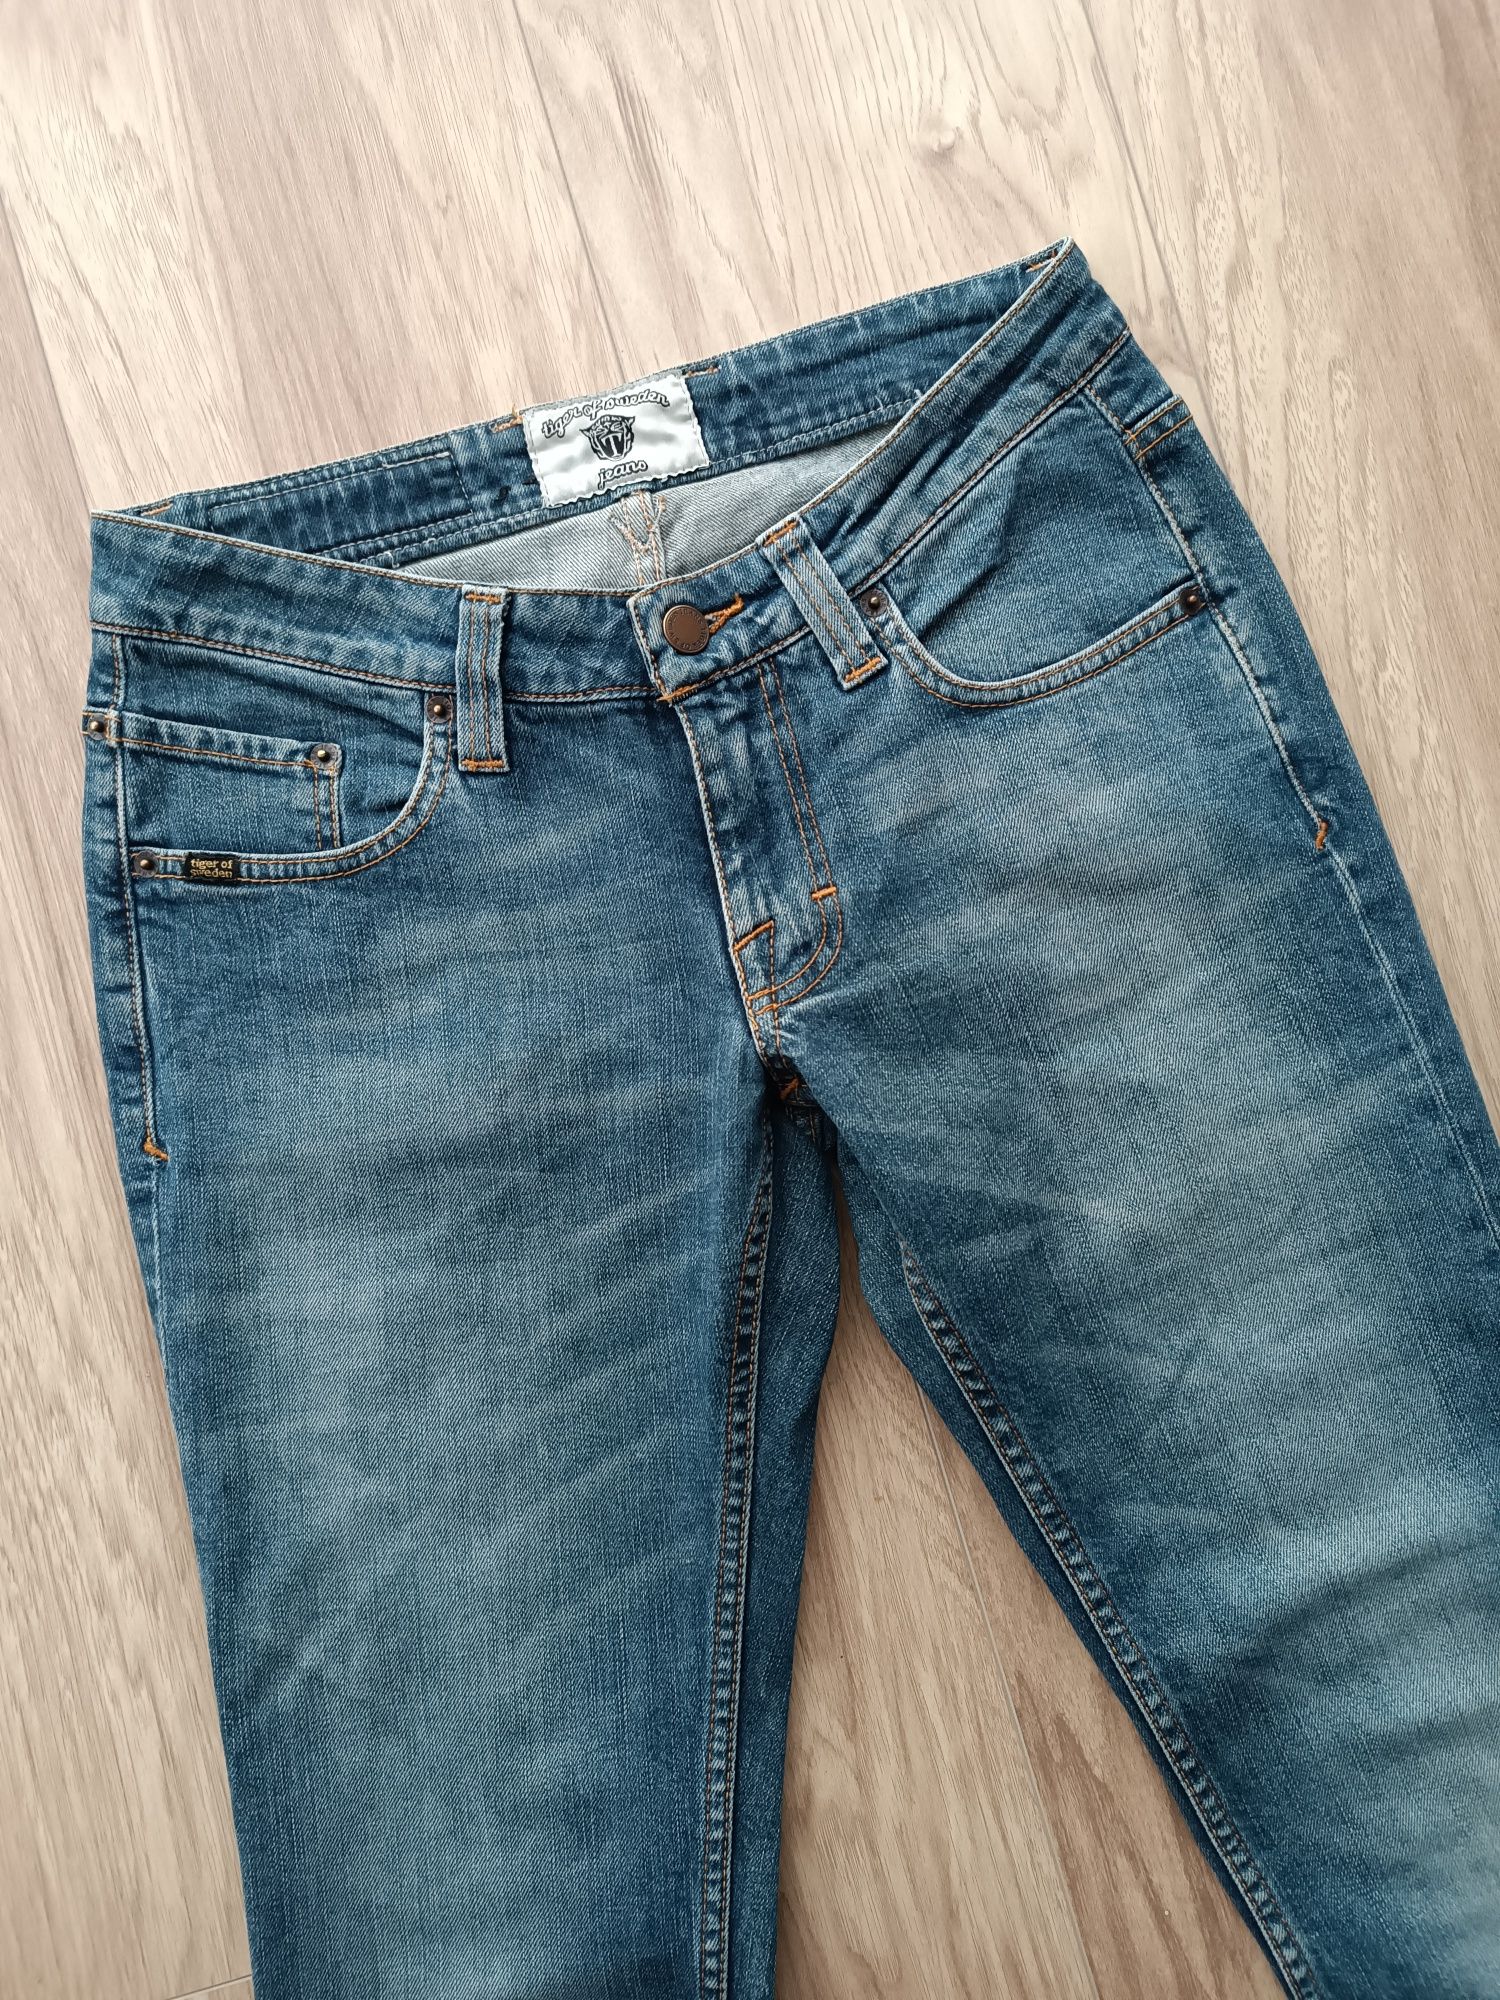 Niebieskie jeansy biodrówki 34/36 xs/s